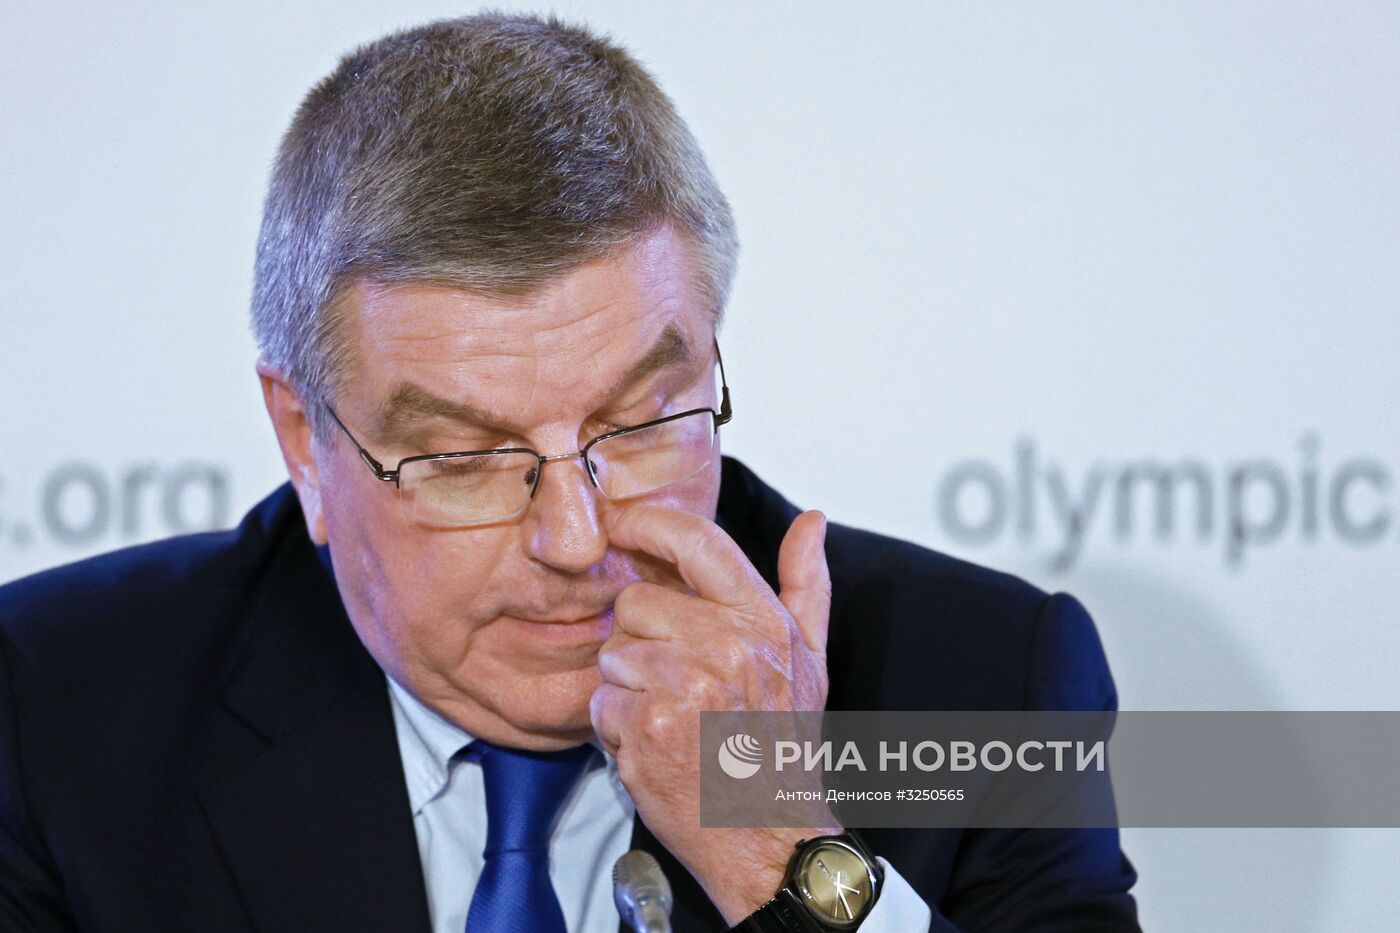 Российским спортсменам разрешили участвовать в ОИ-2018 под нейтральным флагом